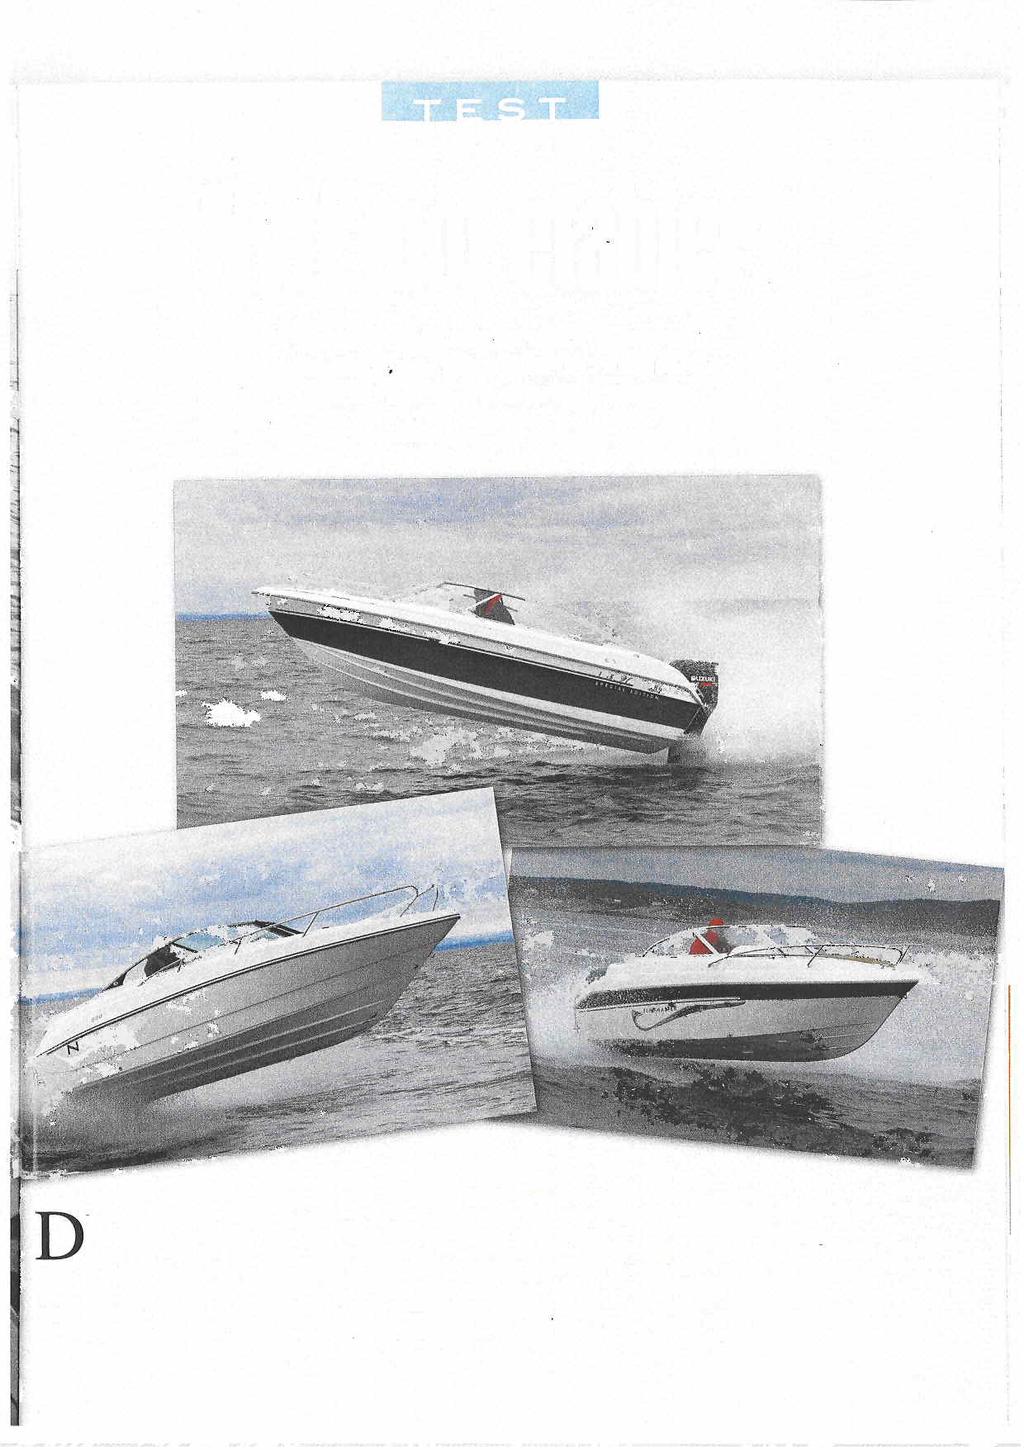 '"-'i. i:t..., -!.,,,' ~ ;i ;~.t 3 små daycruisere IL mol ela erl Finnmaster og Nordkapp stiller til test med Ilunkende nye båter. Utlordrer Ibiza 20 louring har 17 års erla ring å vise til.